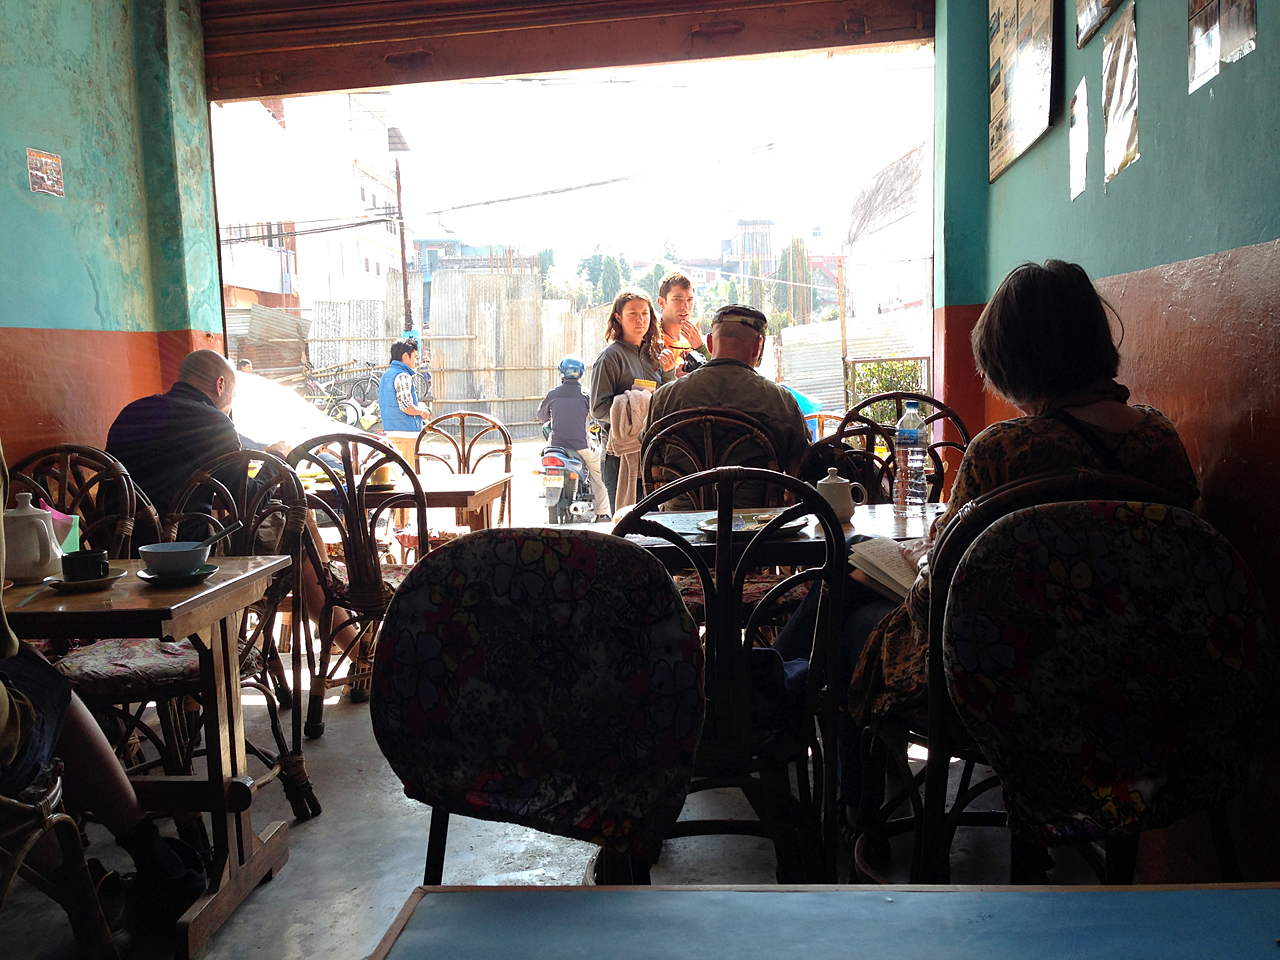 네팔 포카라에서 가장 오래됐다는 빵집. 여행객과 현지인들이 어울려 아침을 먹고 있다.